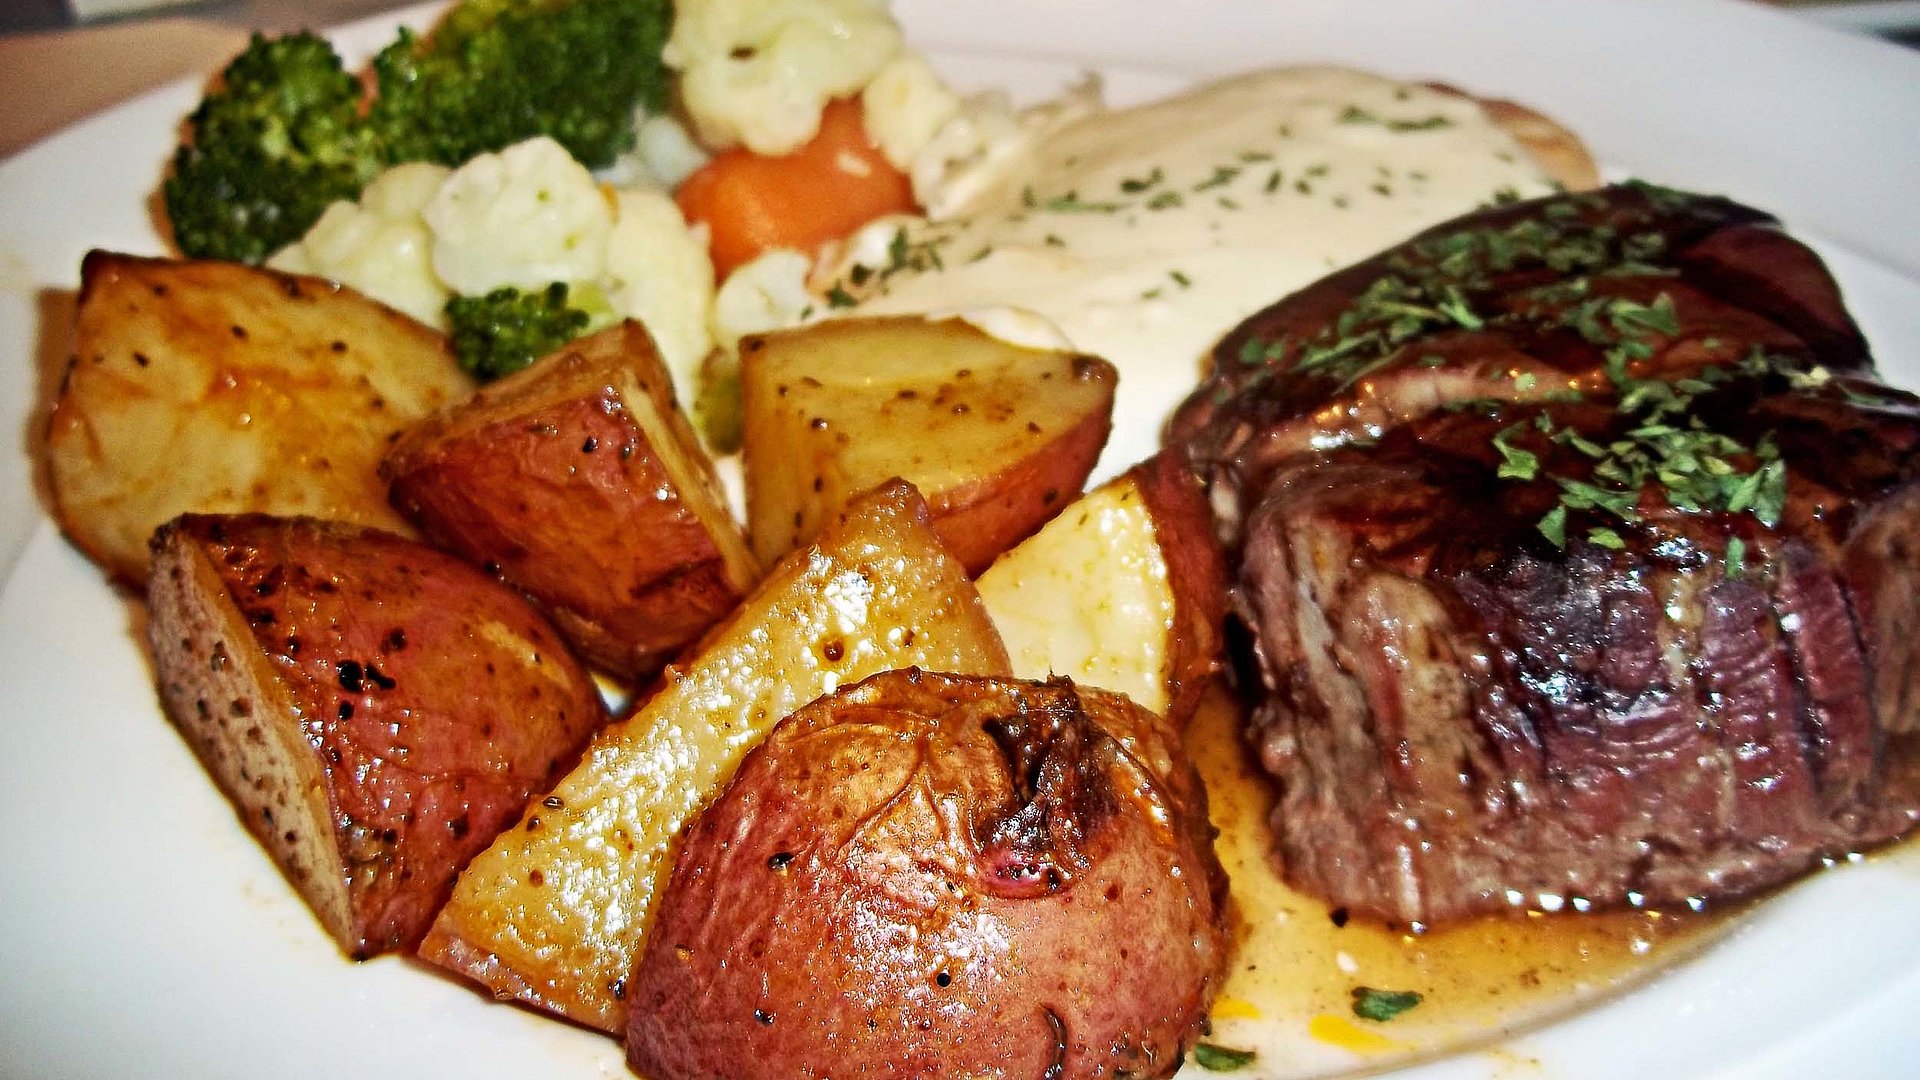 Steak Essen in Nürnberg - Tisch gefüllt mit u.a. Steak und gebratenen Kartoffeln